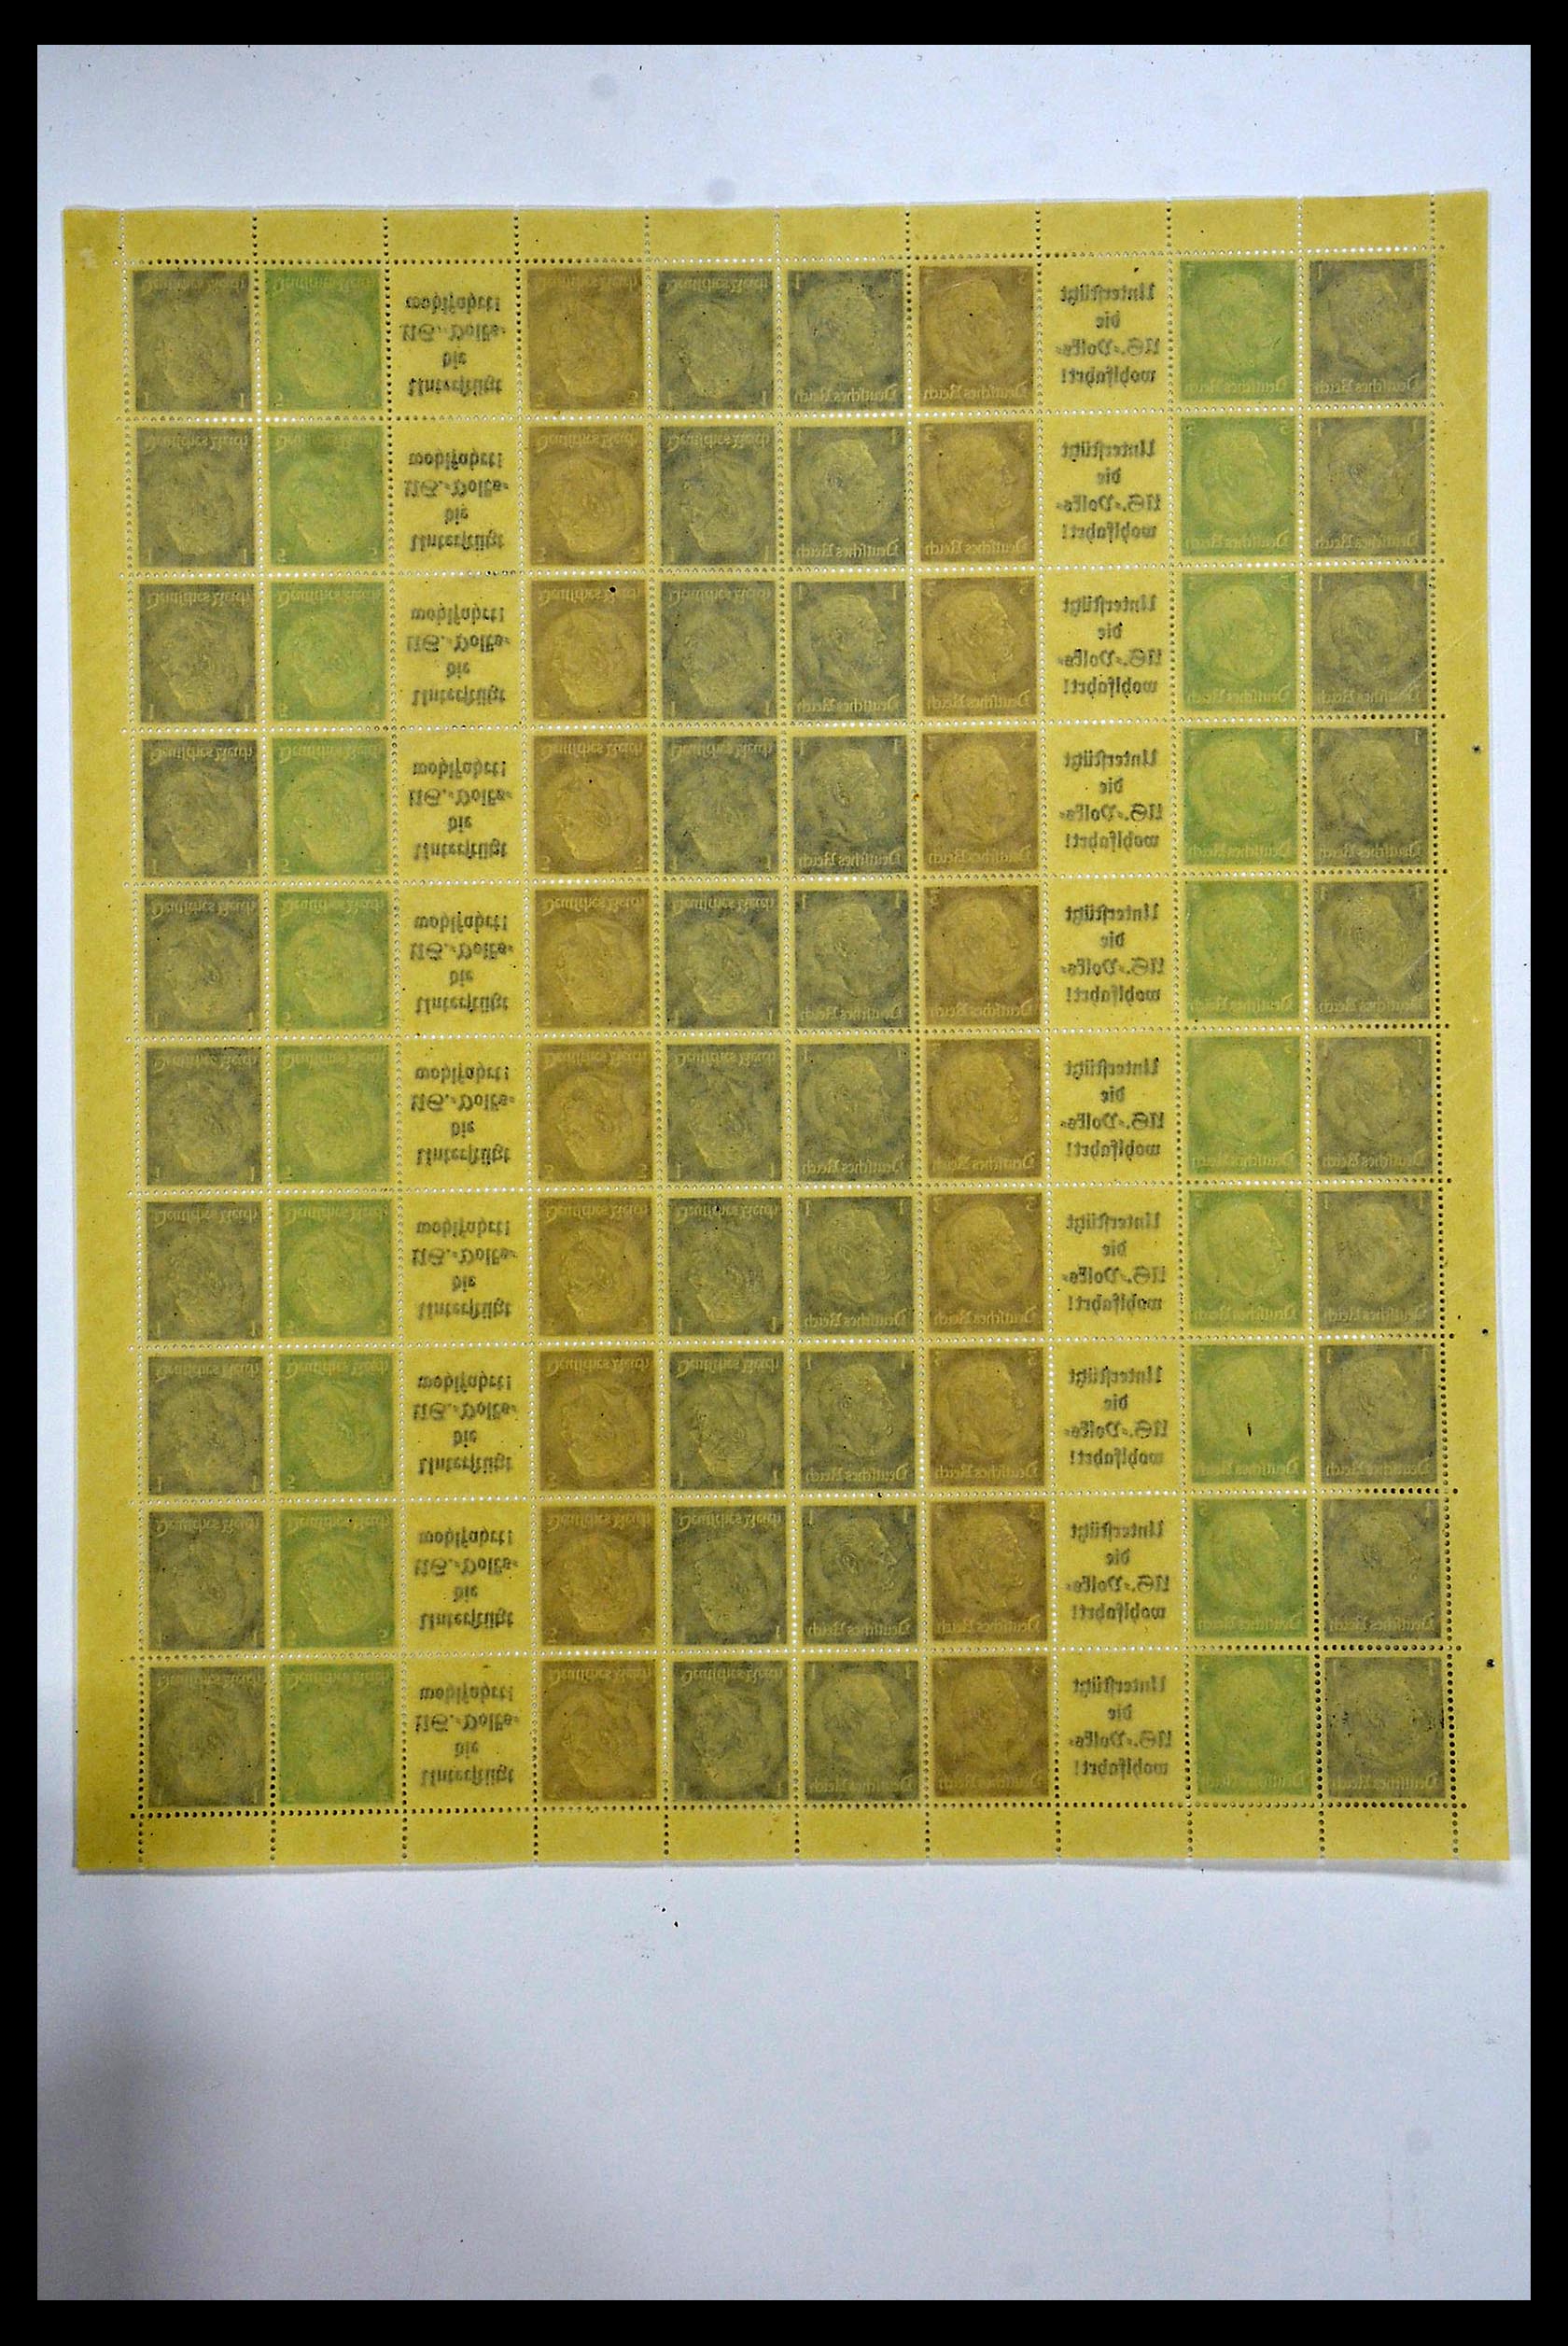 34164 054 - Stamp collection 34164 German Reich Markenheftchenbogen 1933-1942.